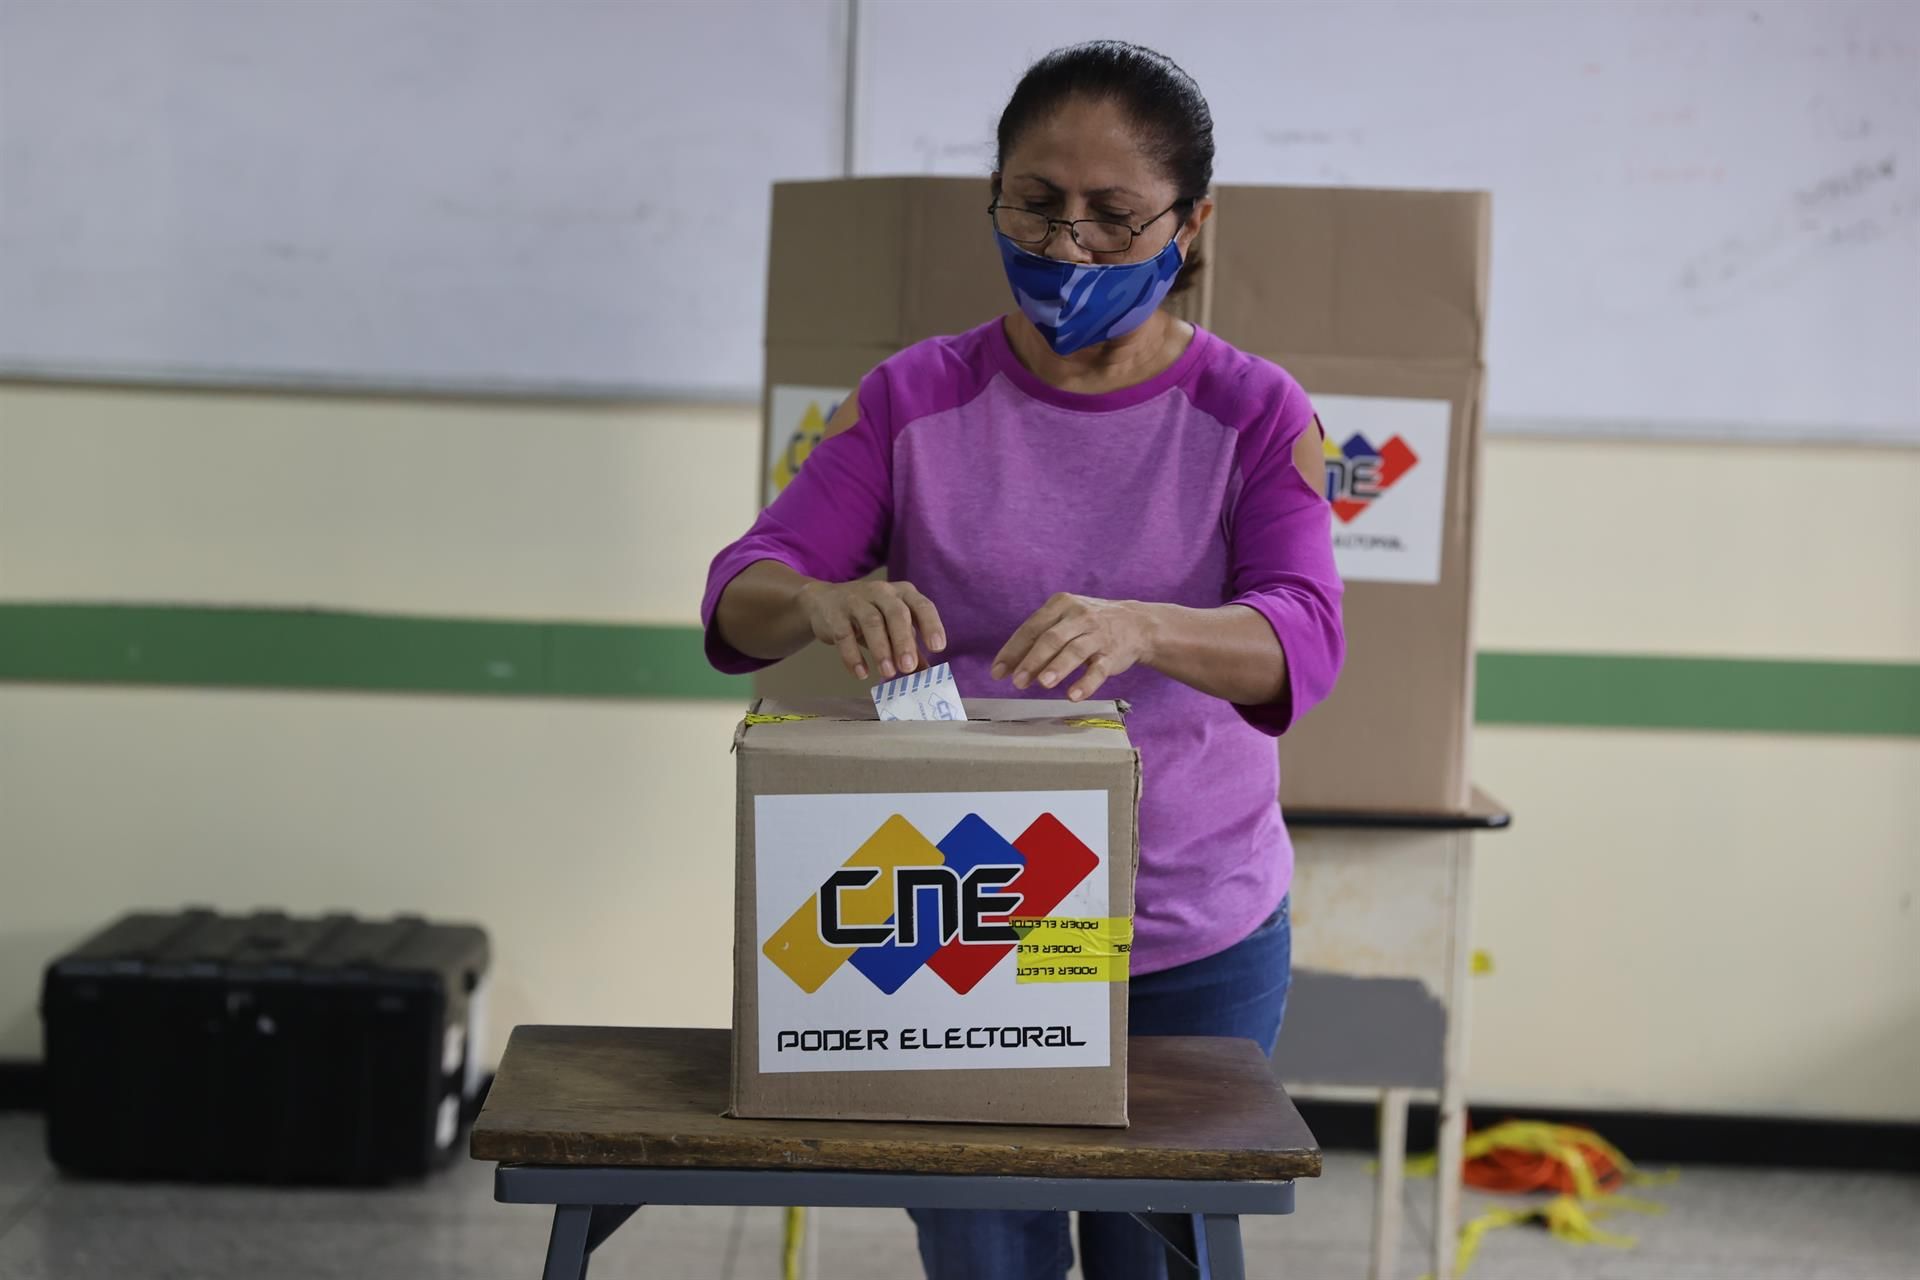 Elecciones en Venezuela bajo la misma sombra de duda pero con la oposición y la UE presentes